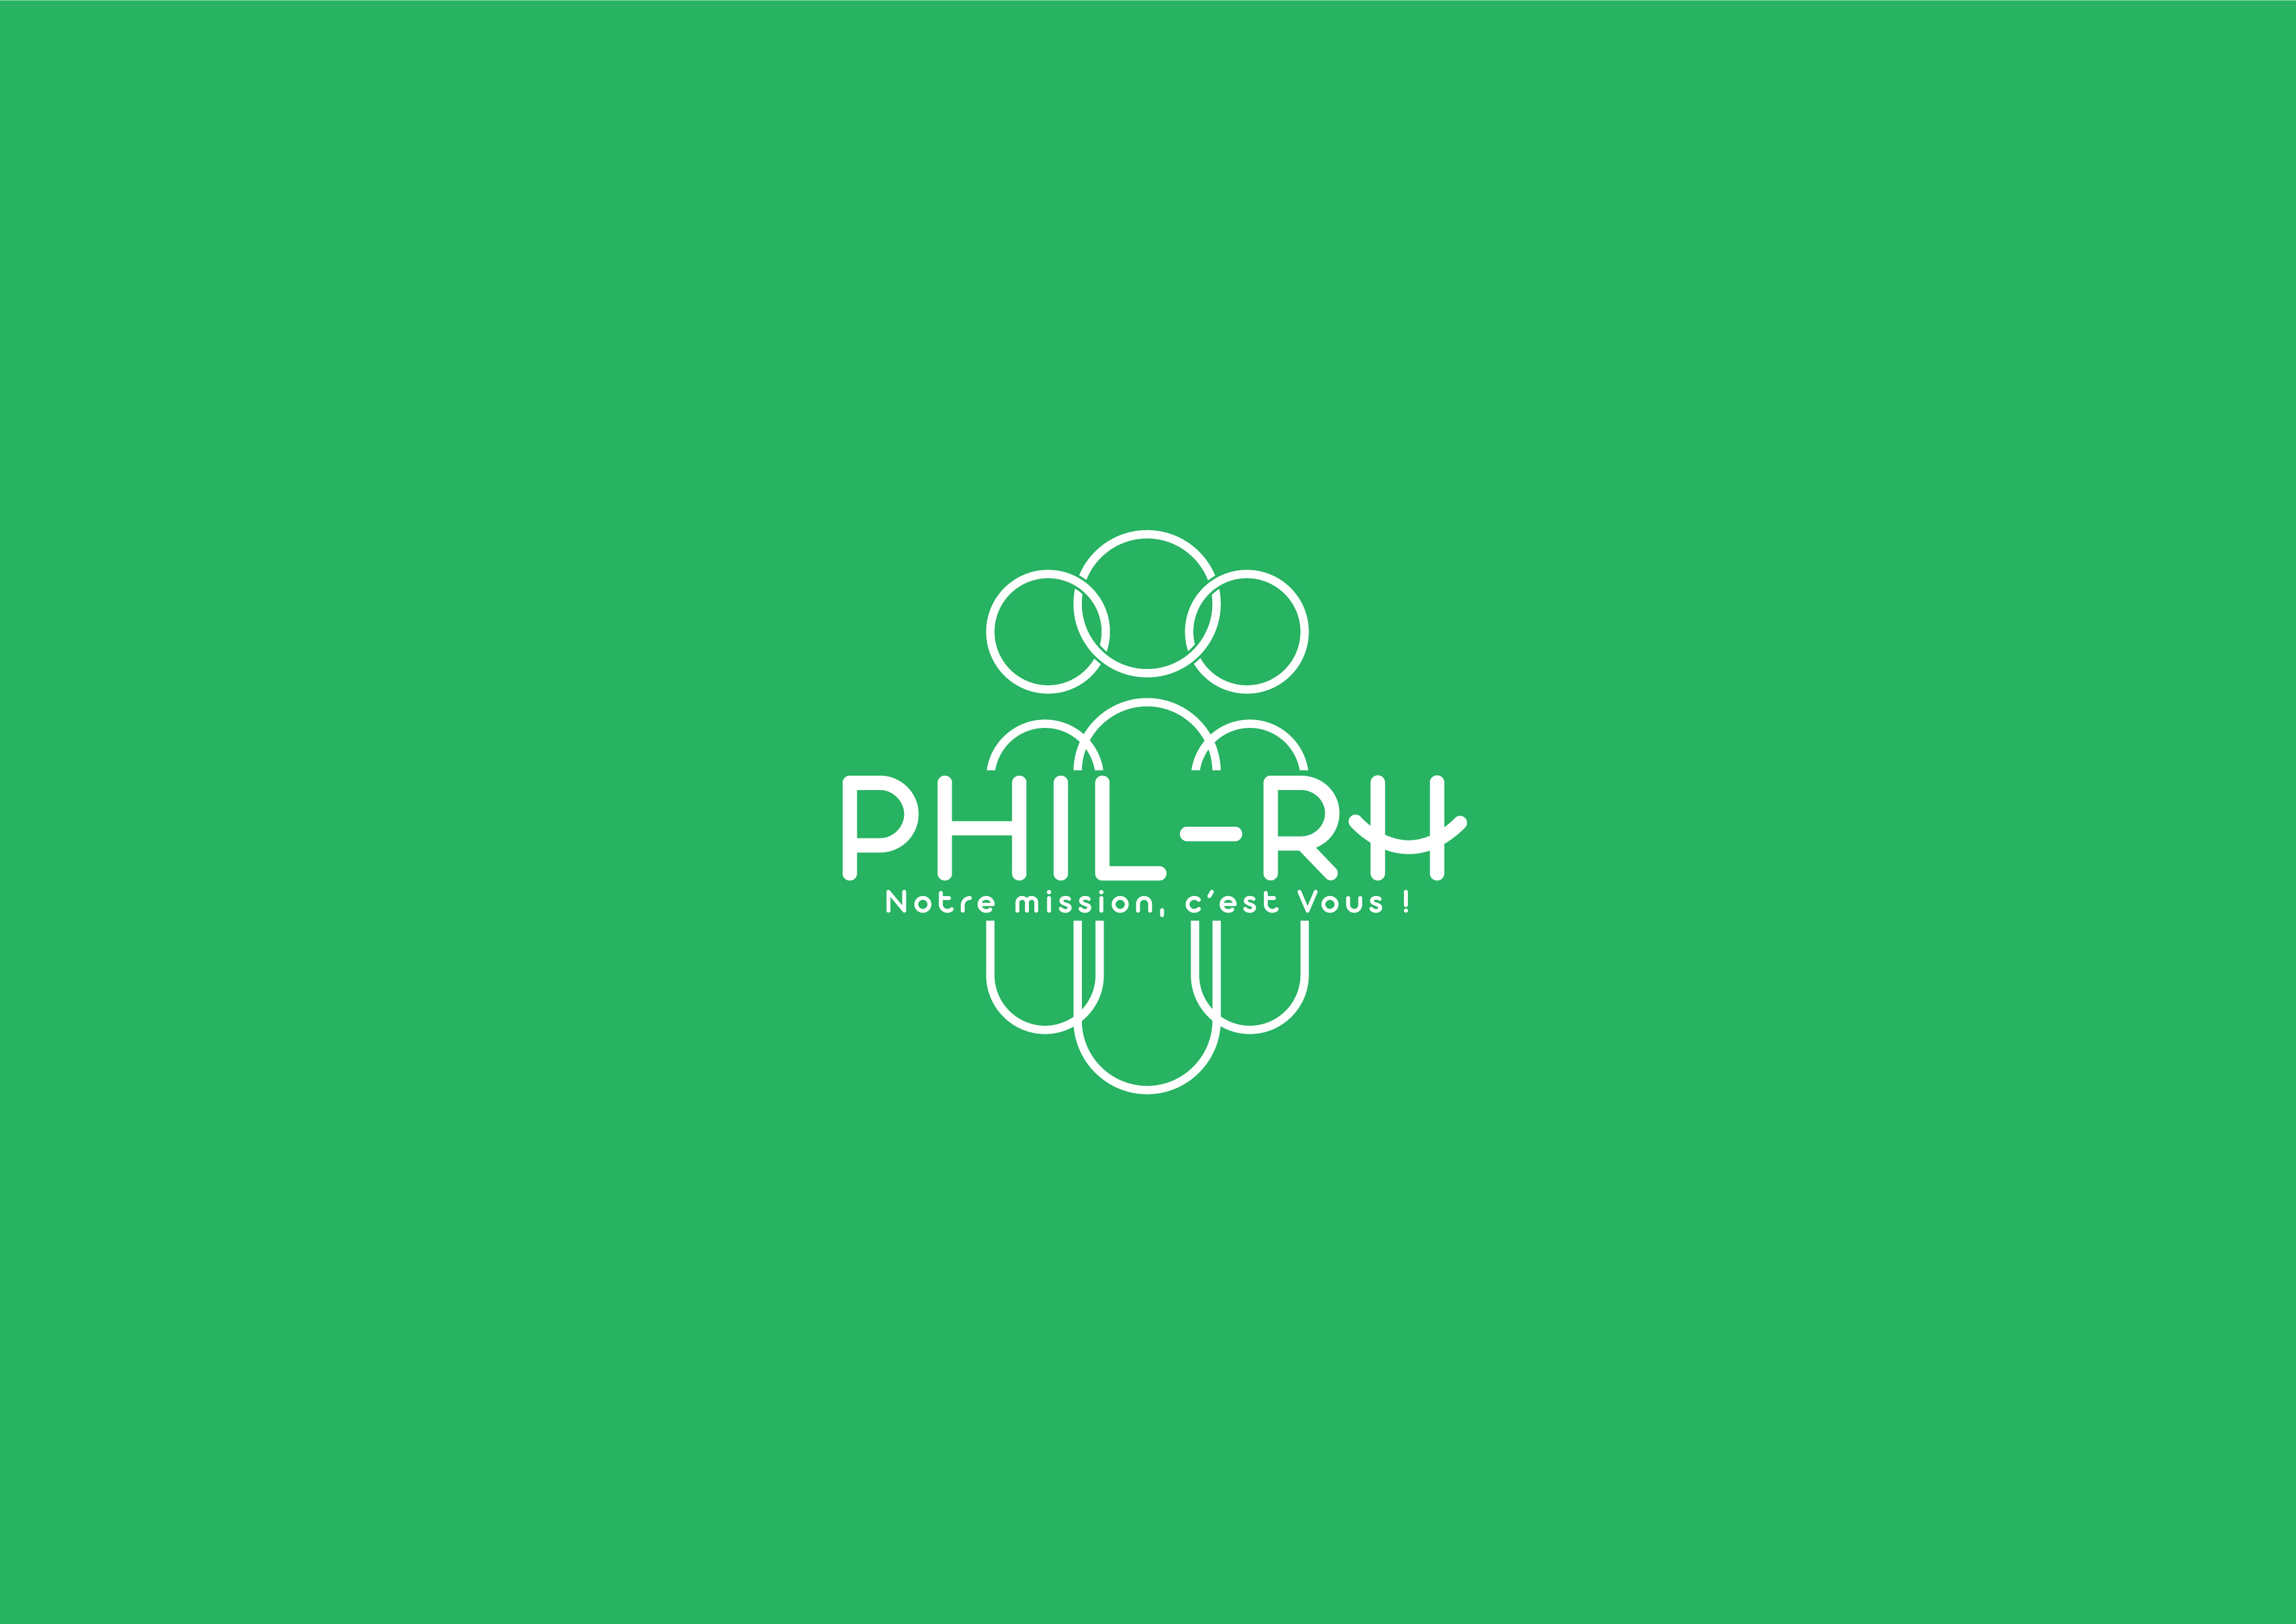 Logo PHIL RH VIENNE